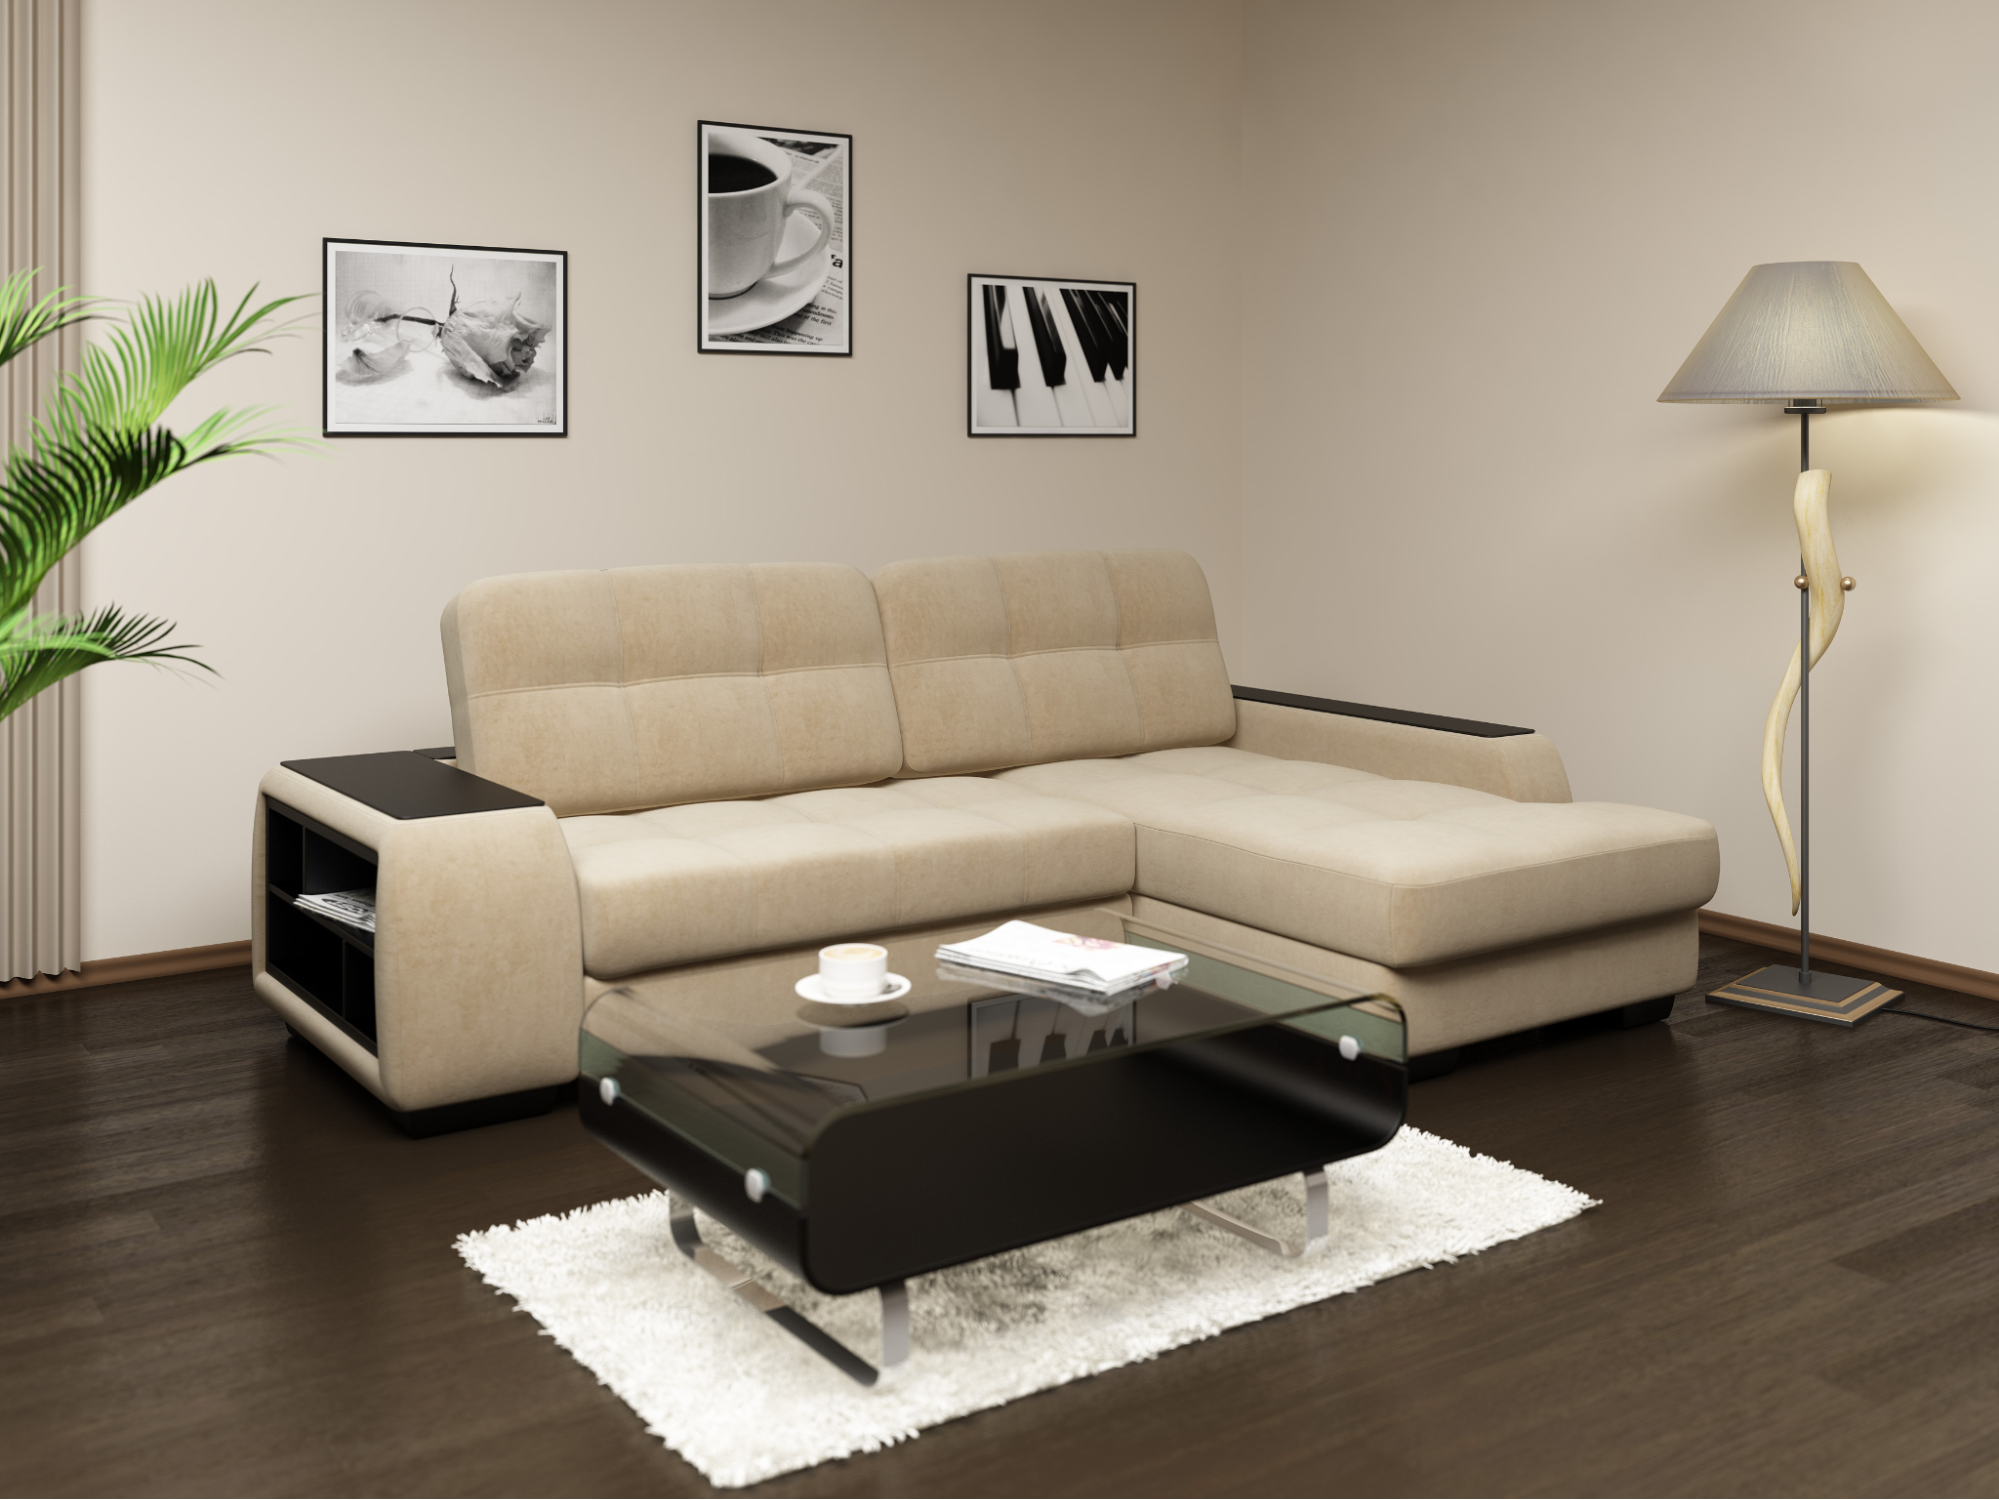 М’які меблі: кутові дивани